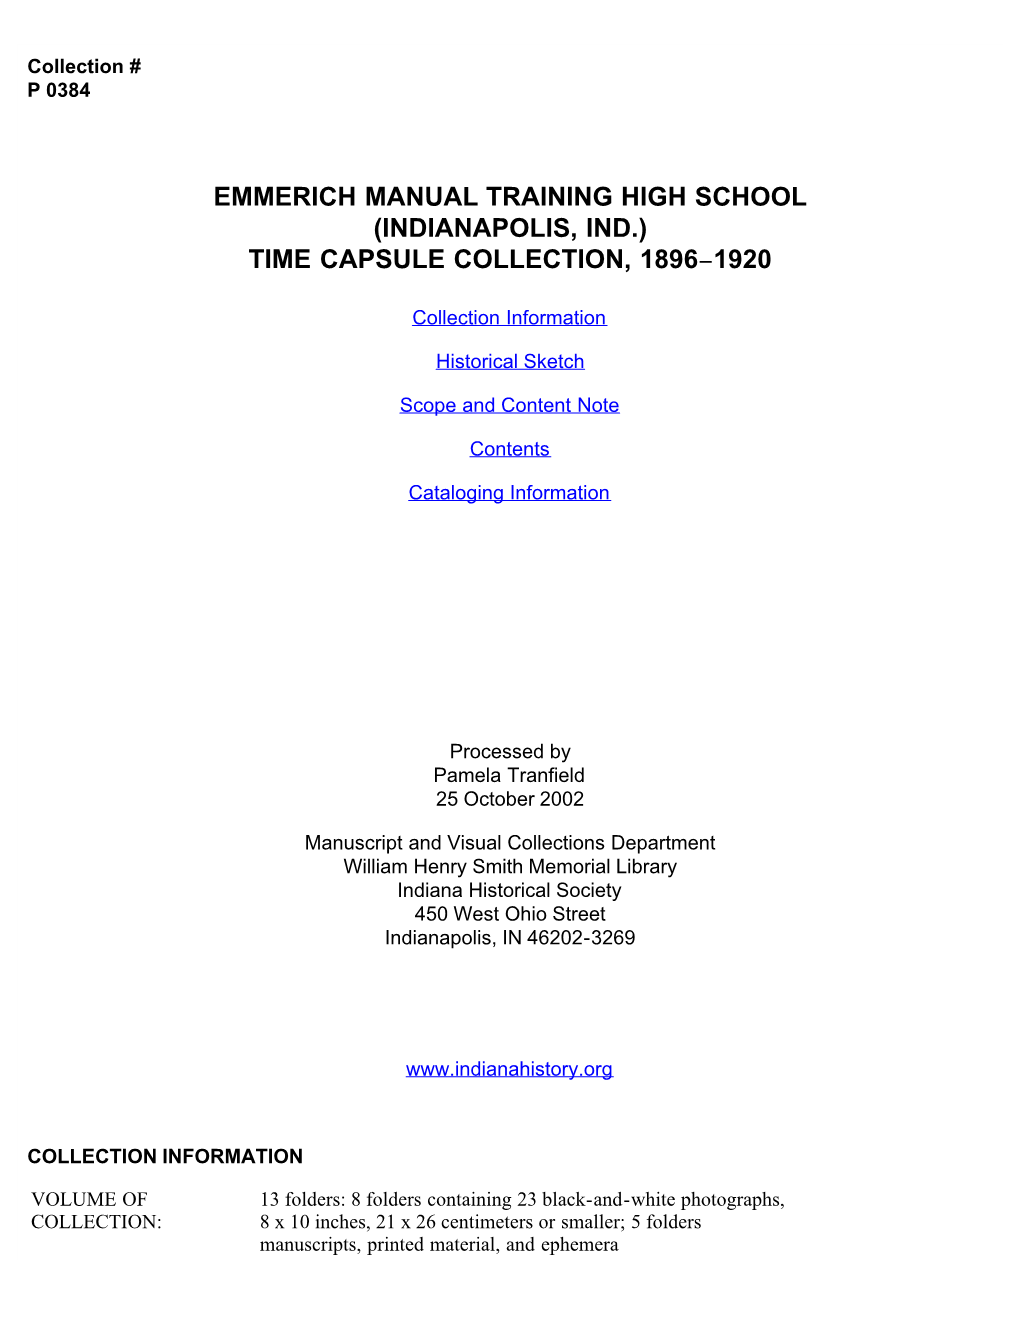 P 0384 Emmerich Manual Training High School